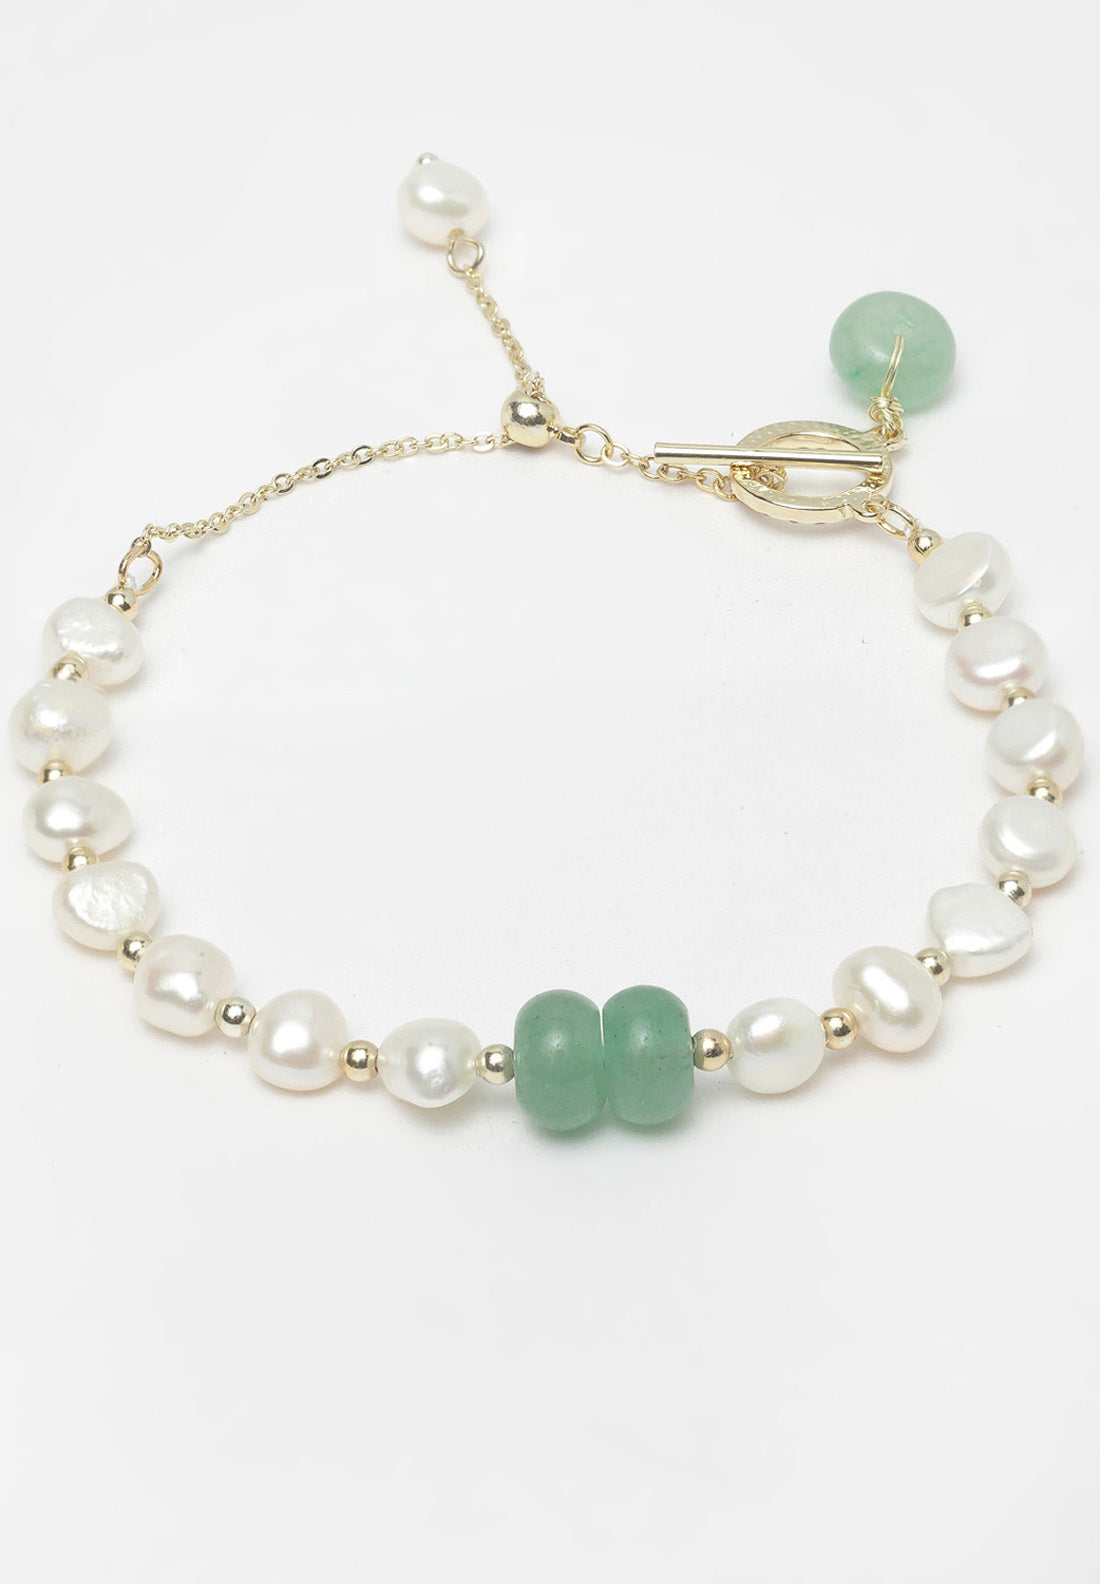 Avantgardistisches Paris-Armband aus Gold und grünen Perlen